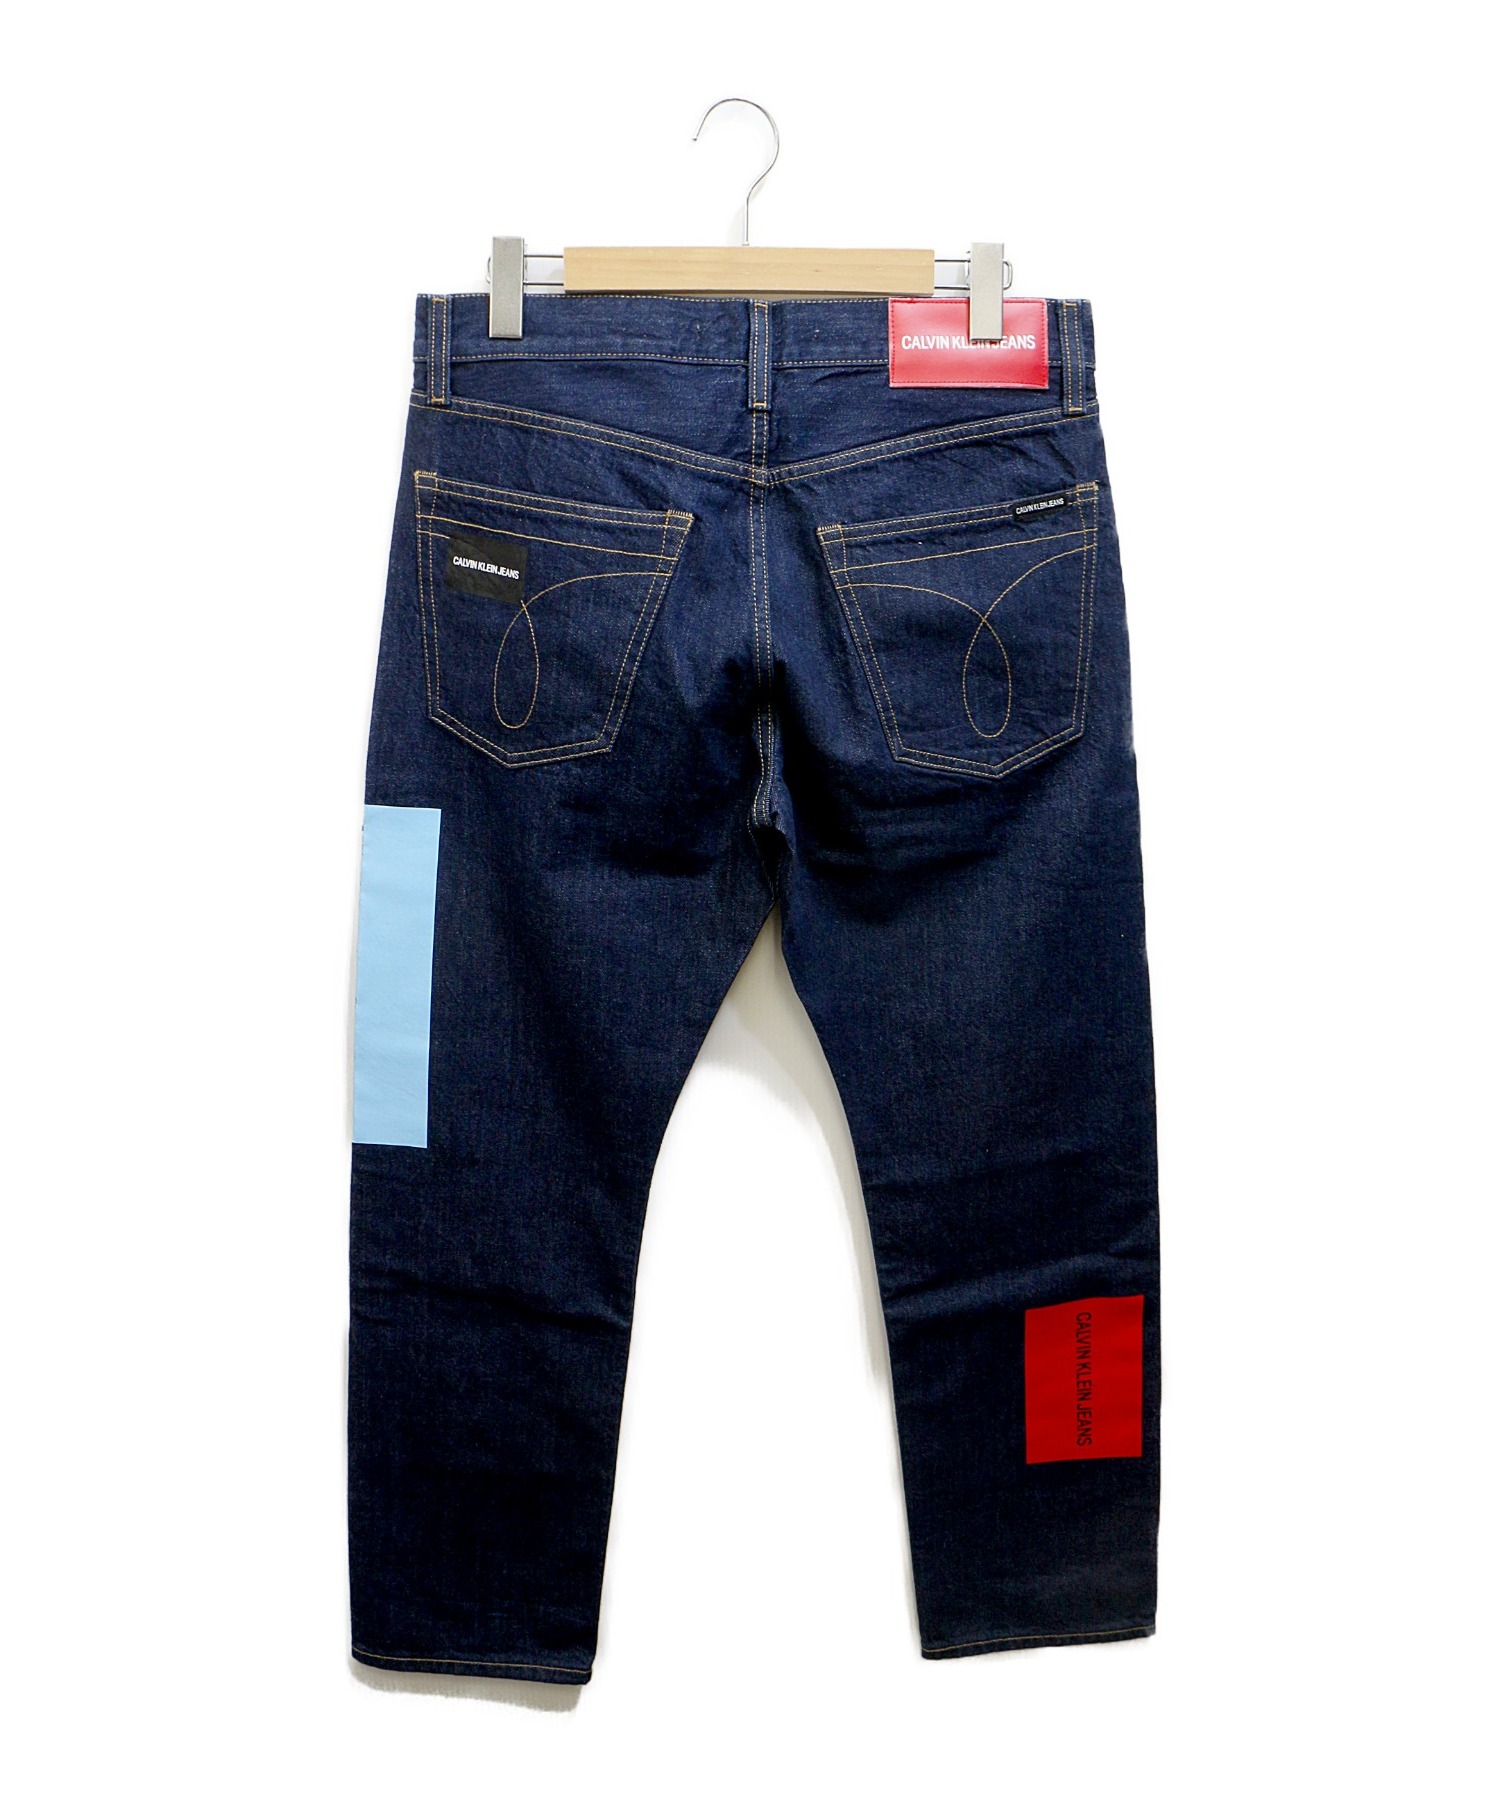 Calvin Klein Jeans (カルバンクラインジーンズ) logo print jeans インディゴ サイズ:C32Ⅼ30